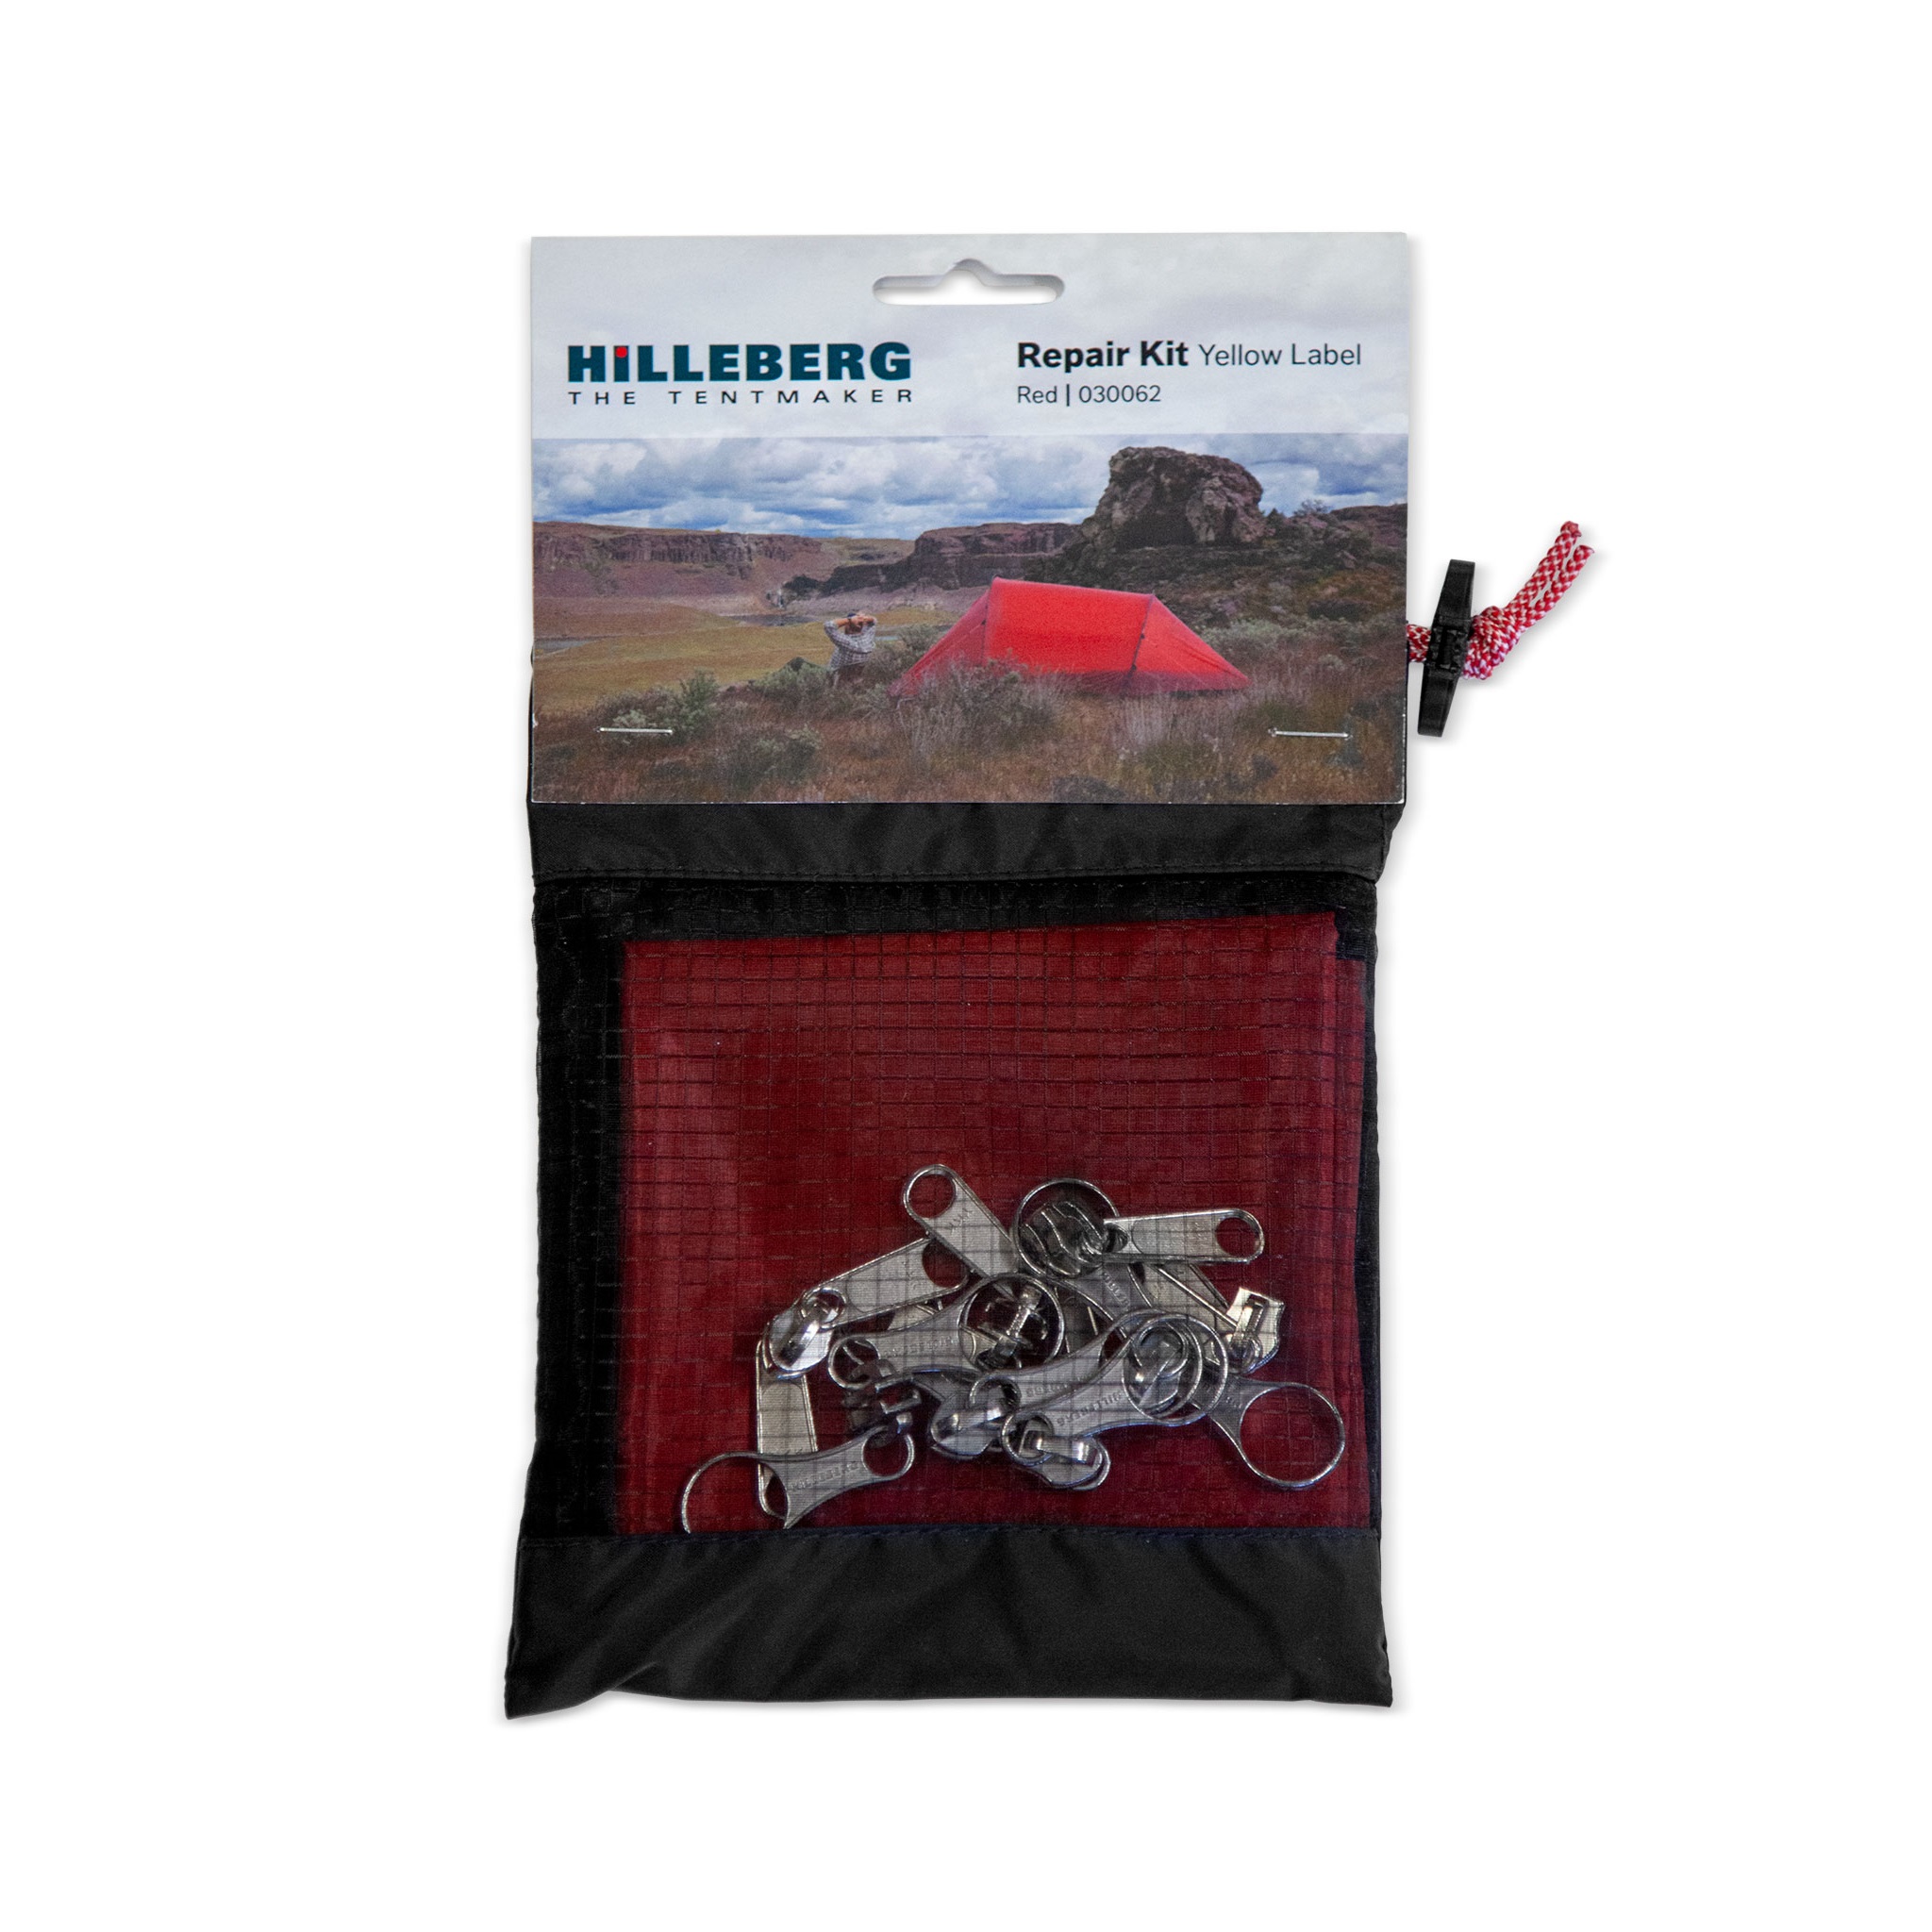 Hilleberg Repair Kit Yellow Label red